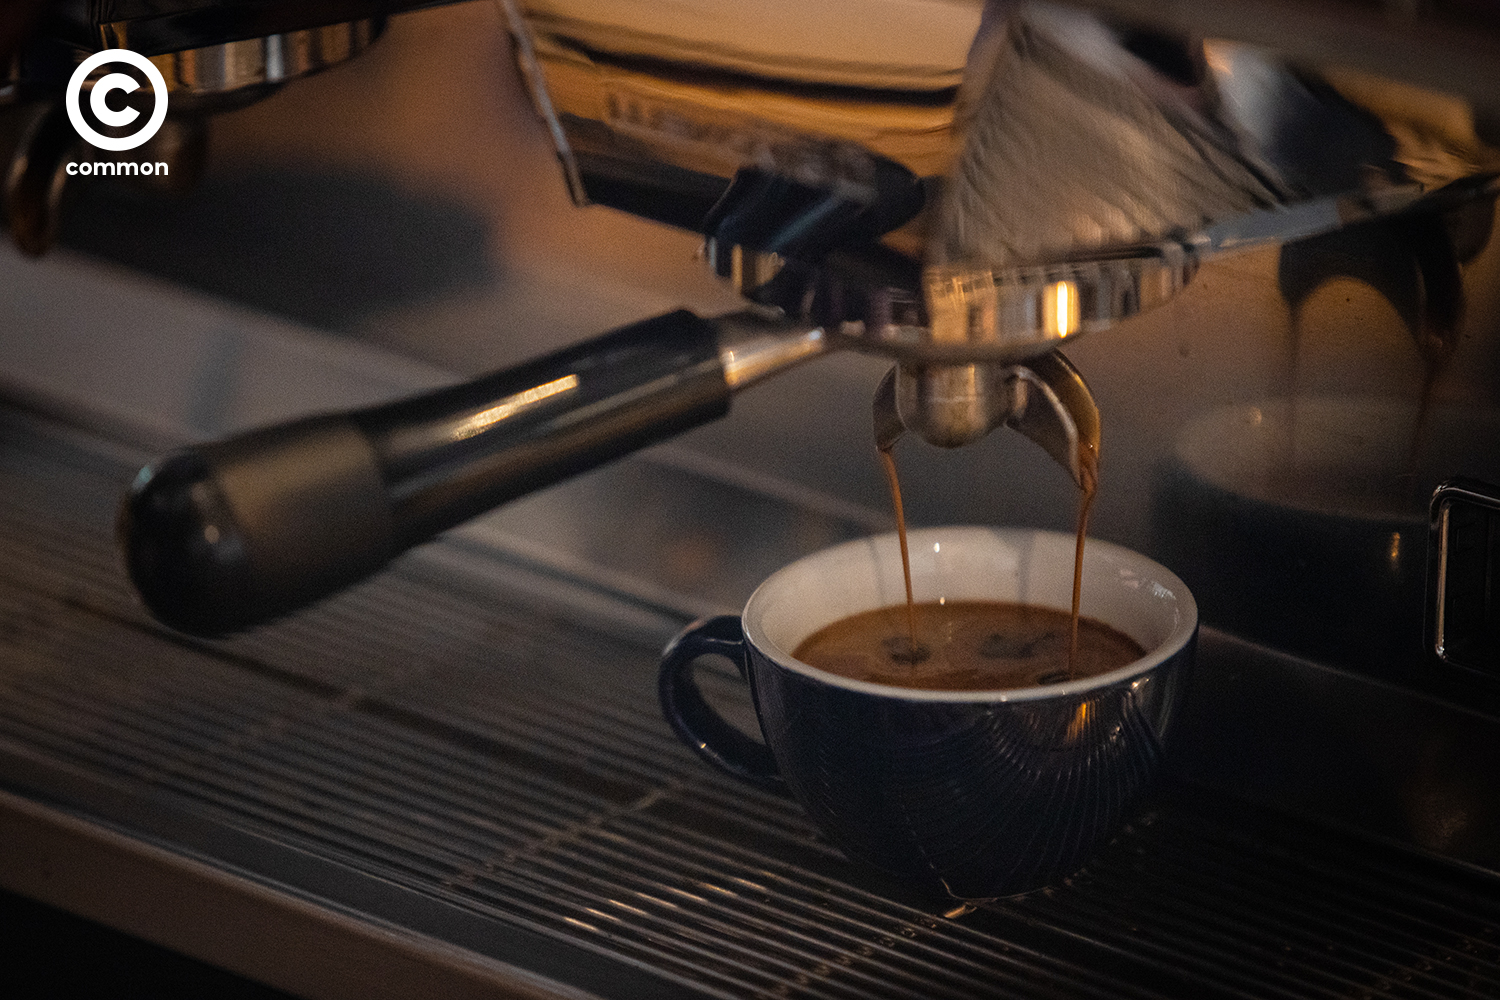 สุขพัฒน์ ปิยะมาดา โจ บาริสต้า A CUP Coffee by ProJOE กาแฟที่ดี